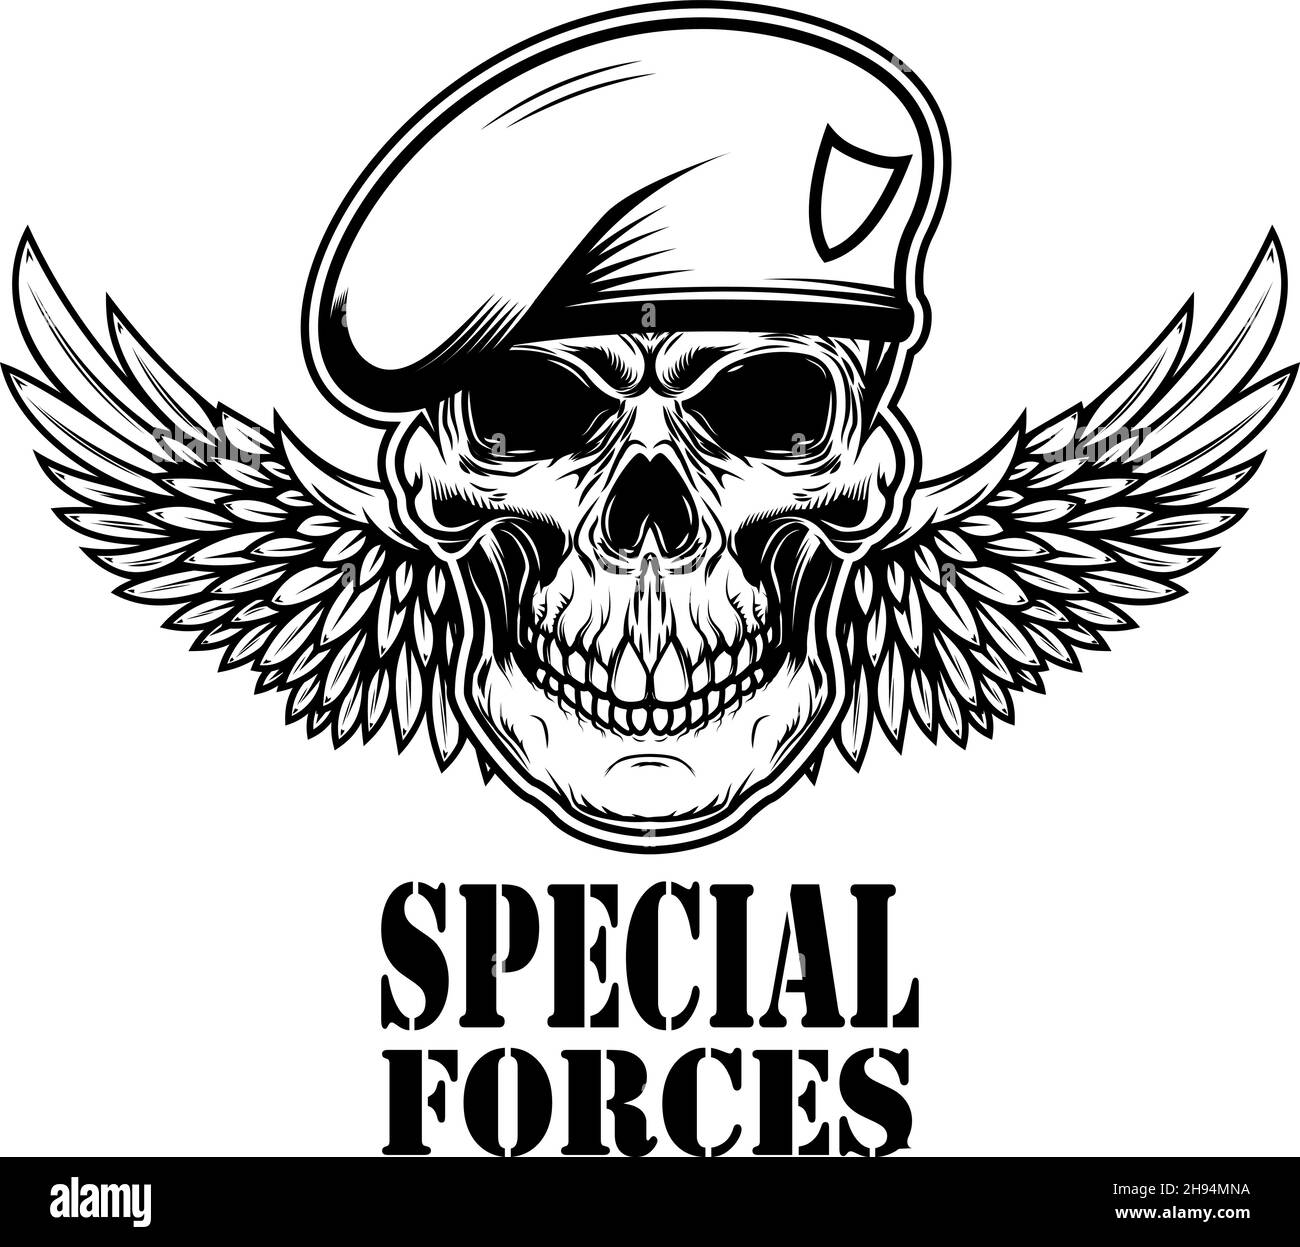 Special forces. Winged soldier skull. Design element for logo, label, sign, emblem. Vector illustration Stock Vector